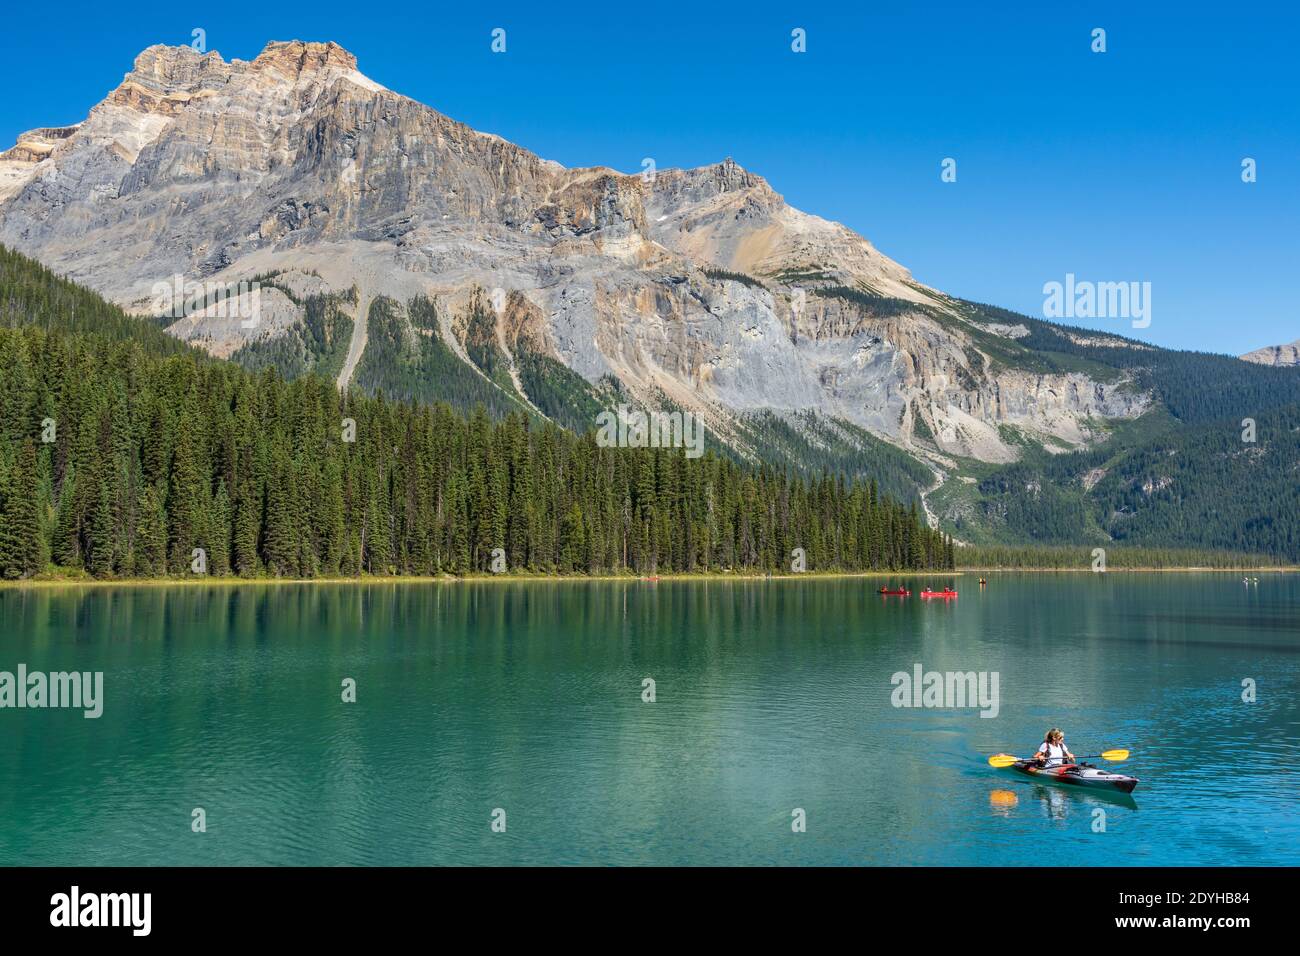 Kanufahren auf Emerald Lake im Sommer sonnigen Tag. Touristen genießen Freizeit Wasseraktivitäten auf türkisfarbenen See im Yoho Nationalpark, Kanadische Rockies Stockfoto